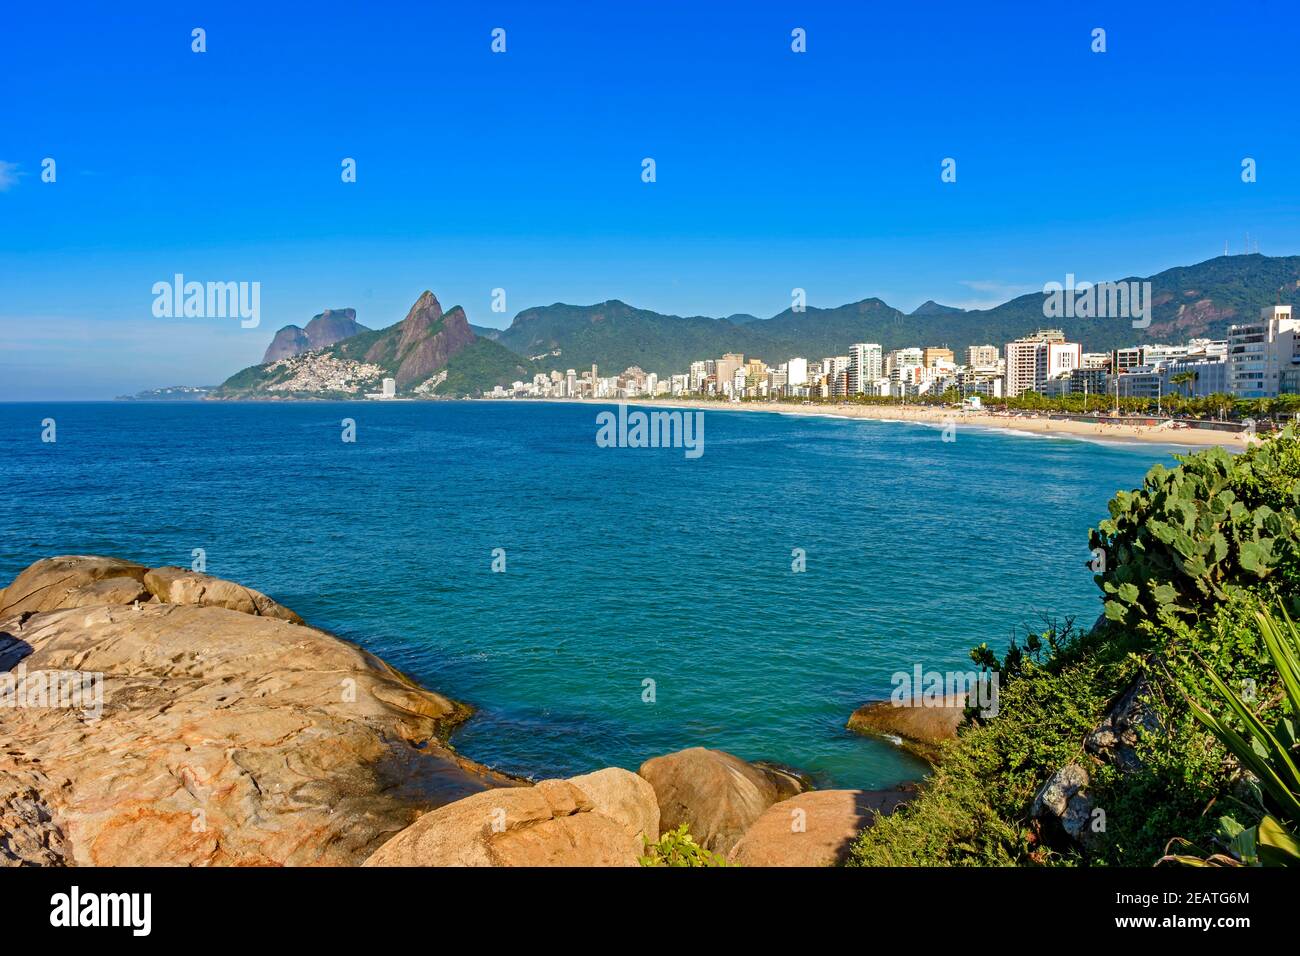 Morning at Ipanema beach seen from Arpoador rock in Rio de Janeiro Stock Photo